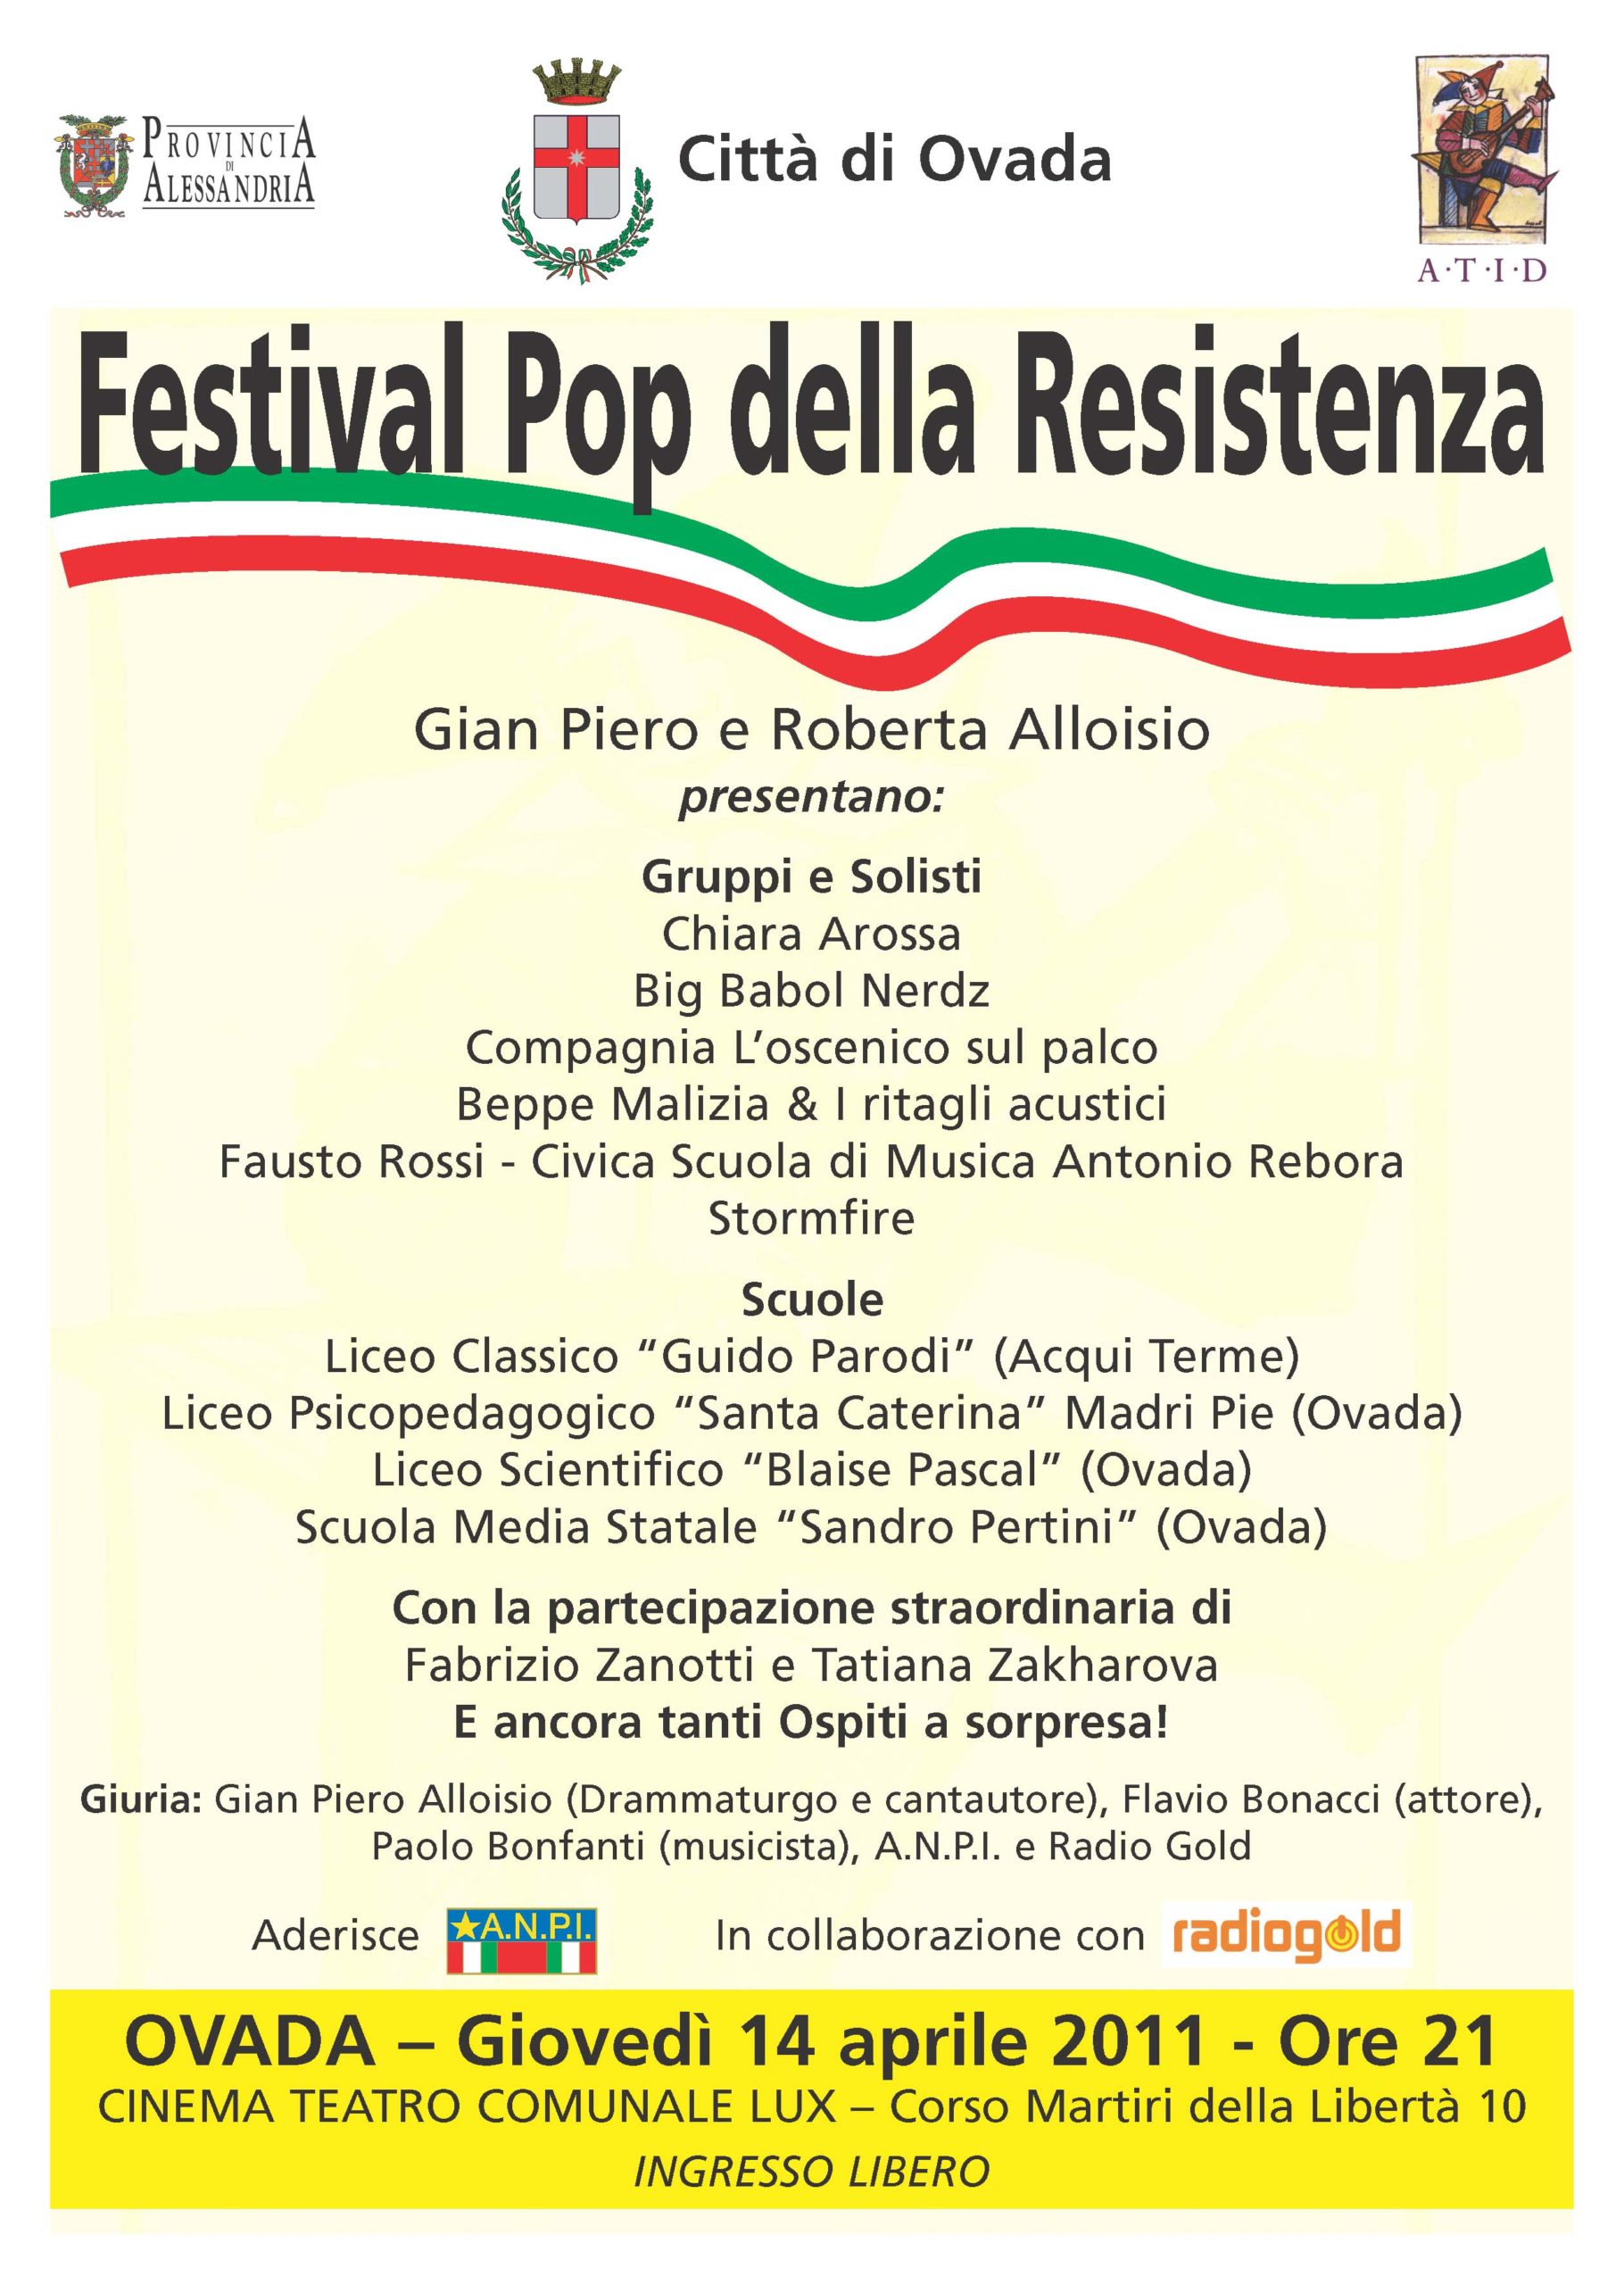 Festival Pop della Resistenza - Ovada 2011